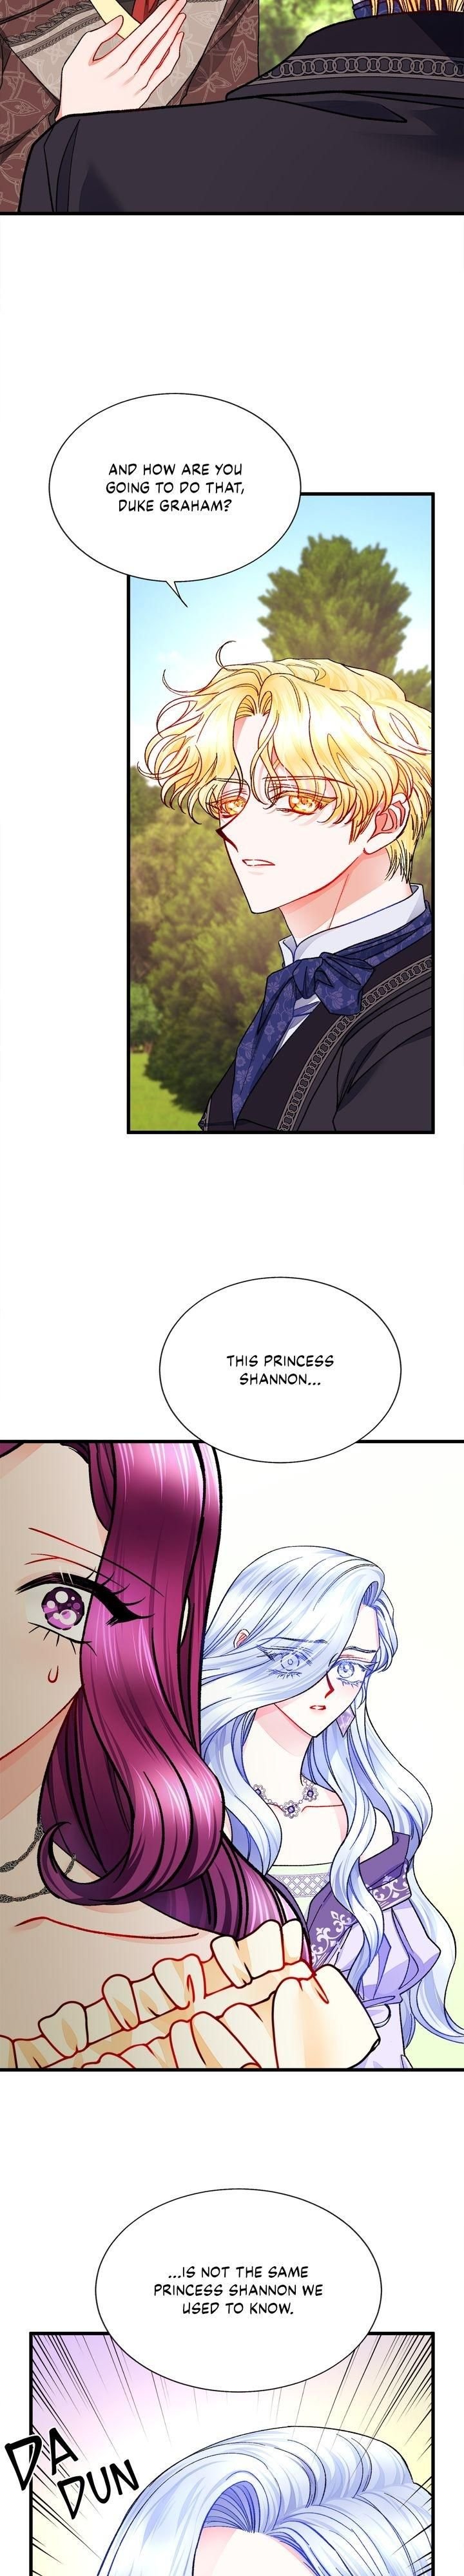 Villainous Princess Chapter 74 - Page 2